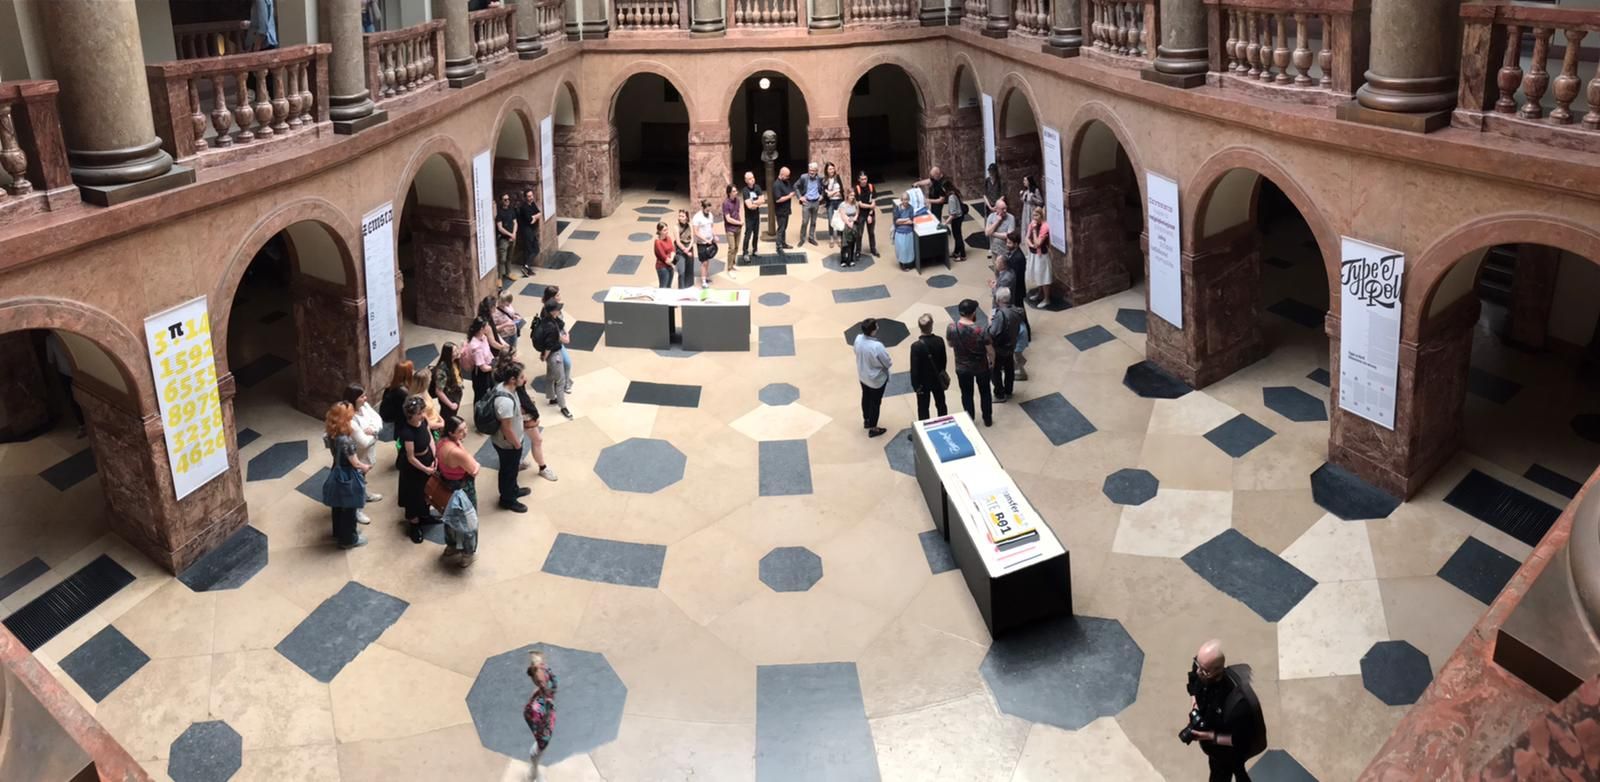 Widok z górnej galerii na hol Collegium Maius, po którym przechadzają się różne osoby, oglądając wystawione ekspozycje.